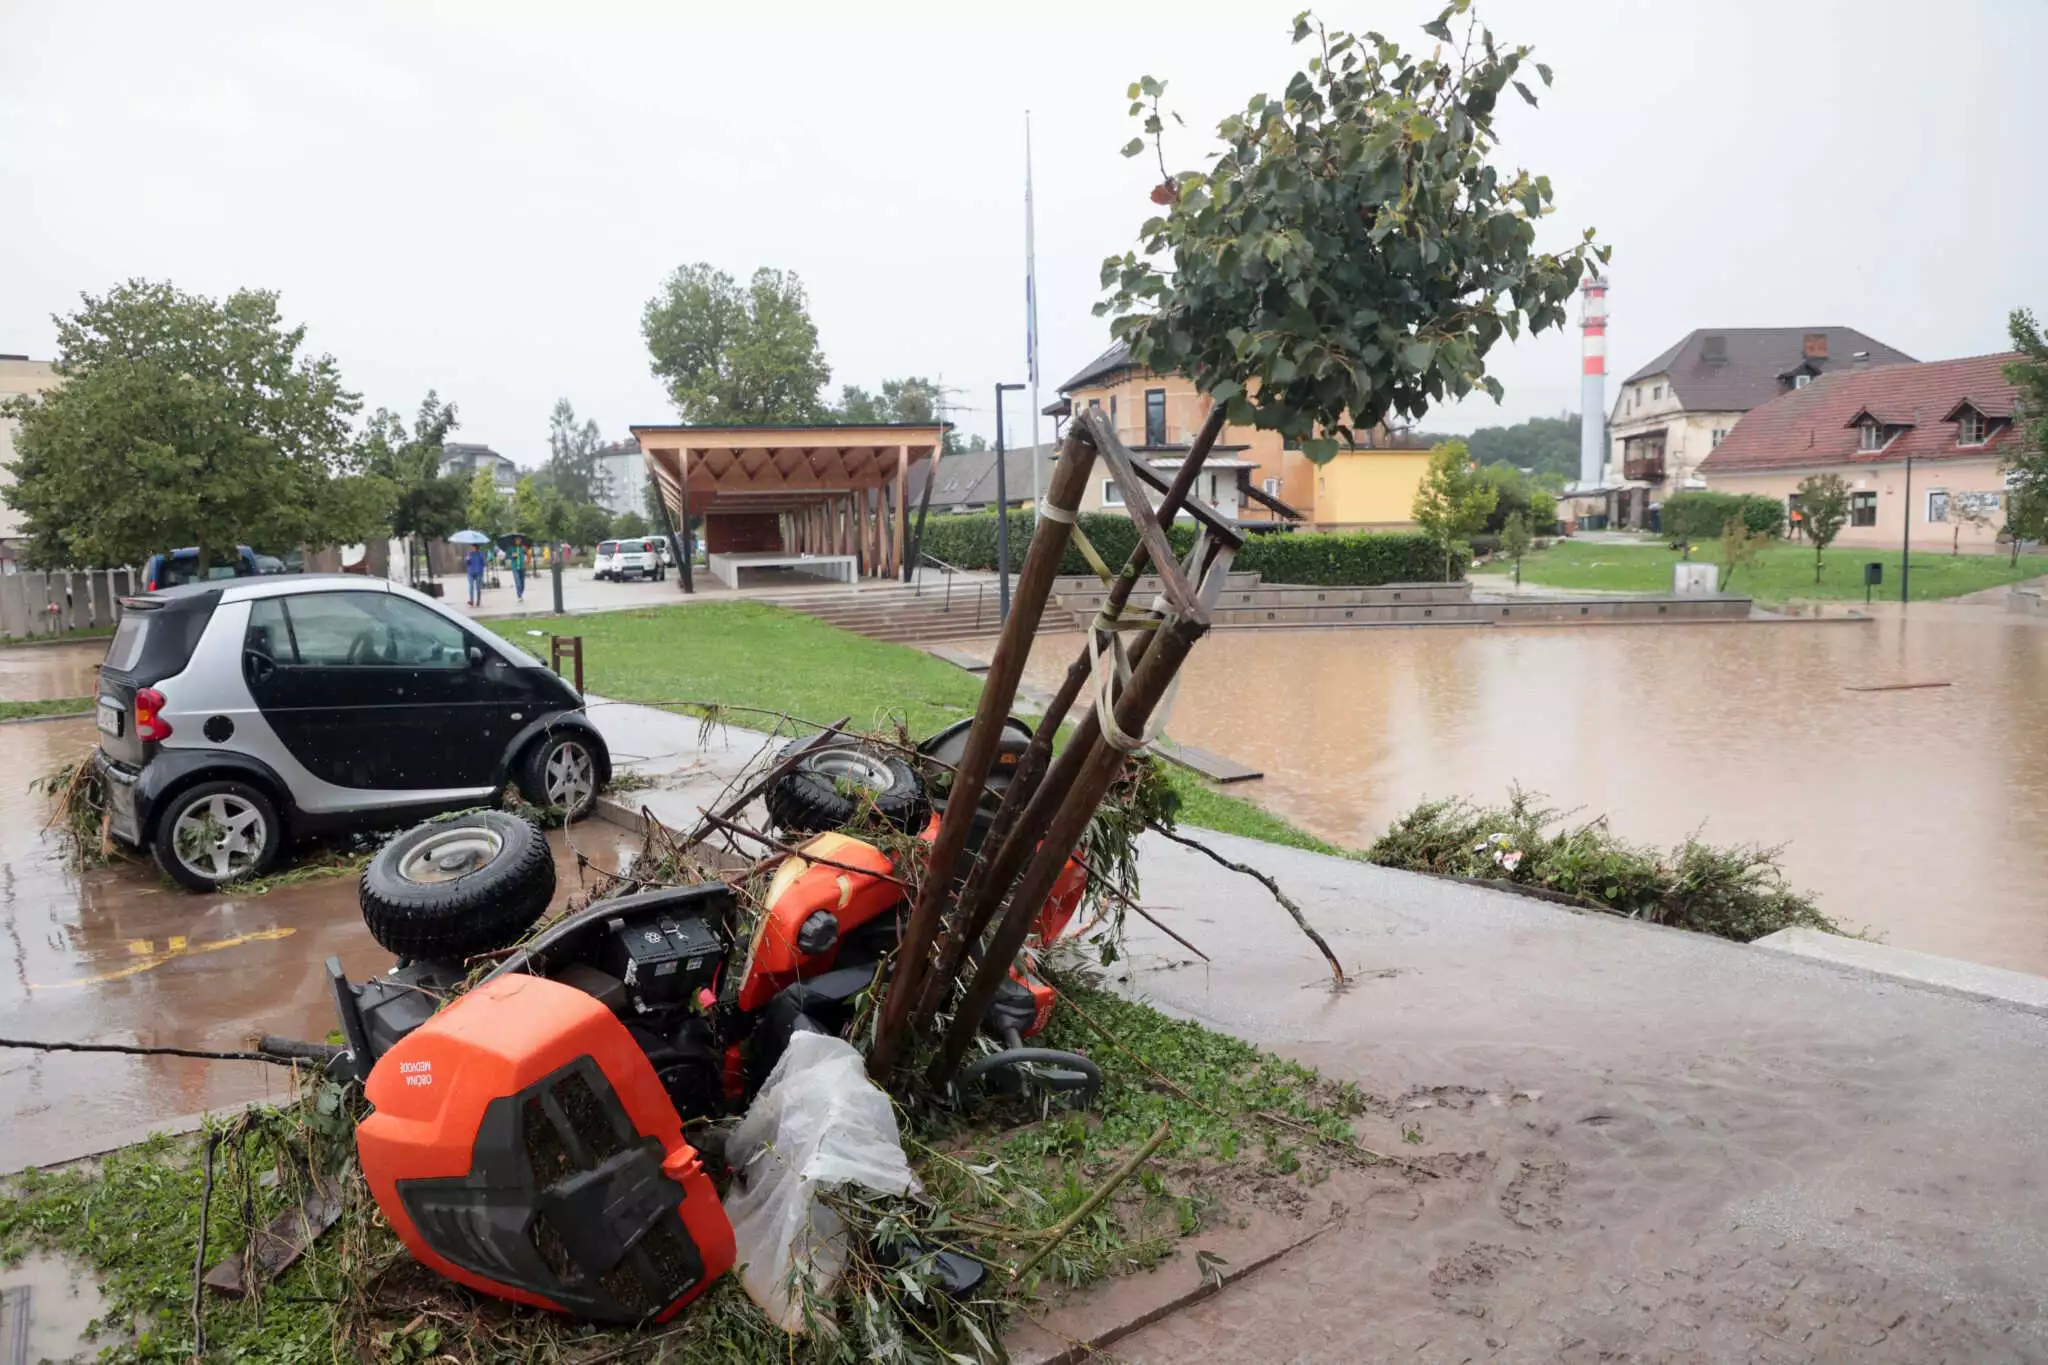 Σλοβενία: Τρεις νεκροί από τις καταρρακτώδεις βροχές – Εκκενώνονται ολόκληρες περιοχές ΦΩΤΟ - ΒΙΝΤΕΟ